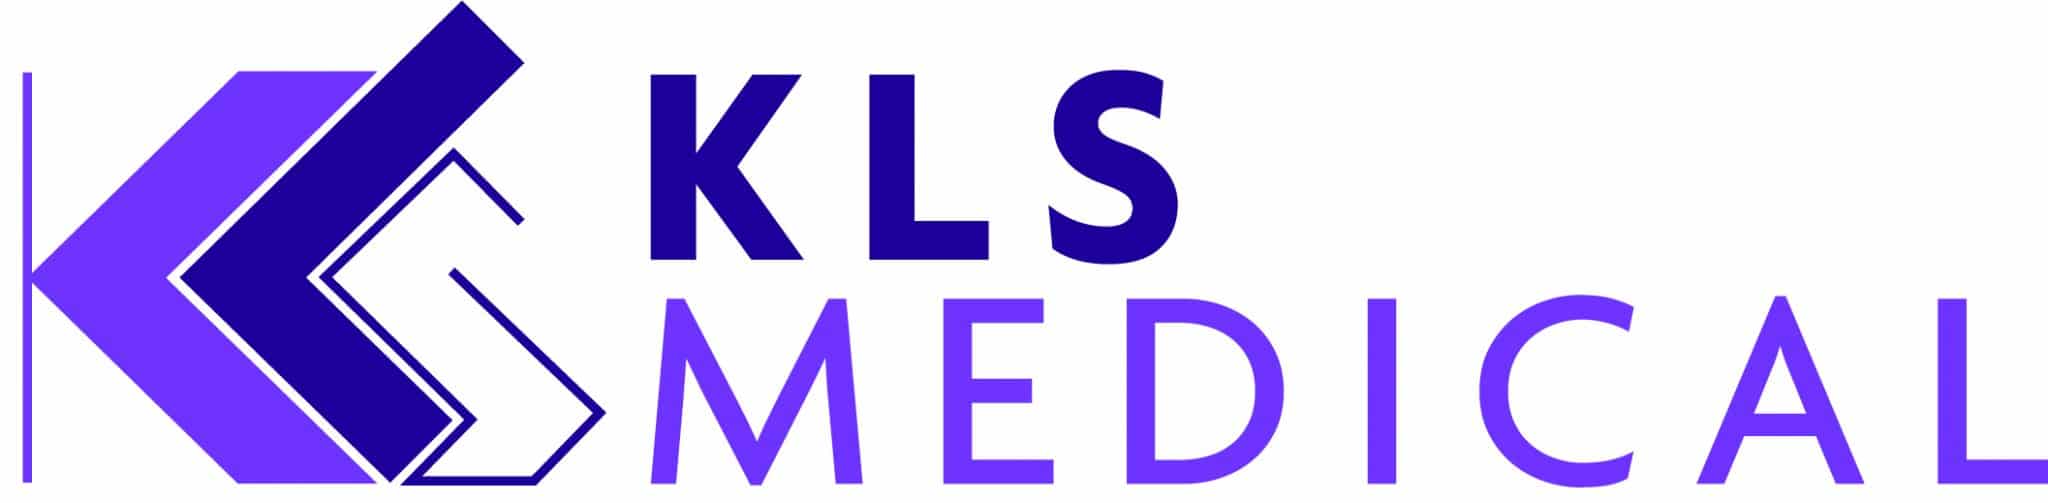 KLS Group annonce la création de KLS Medical, une business unit dédiée aux solutions digitales de santé